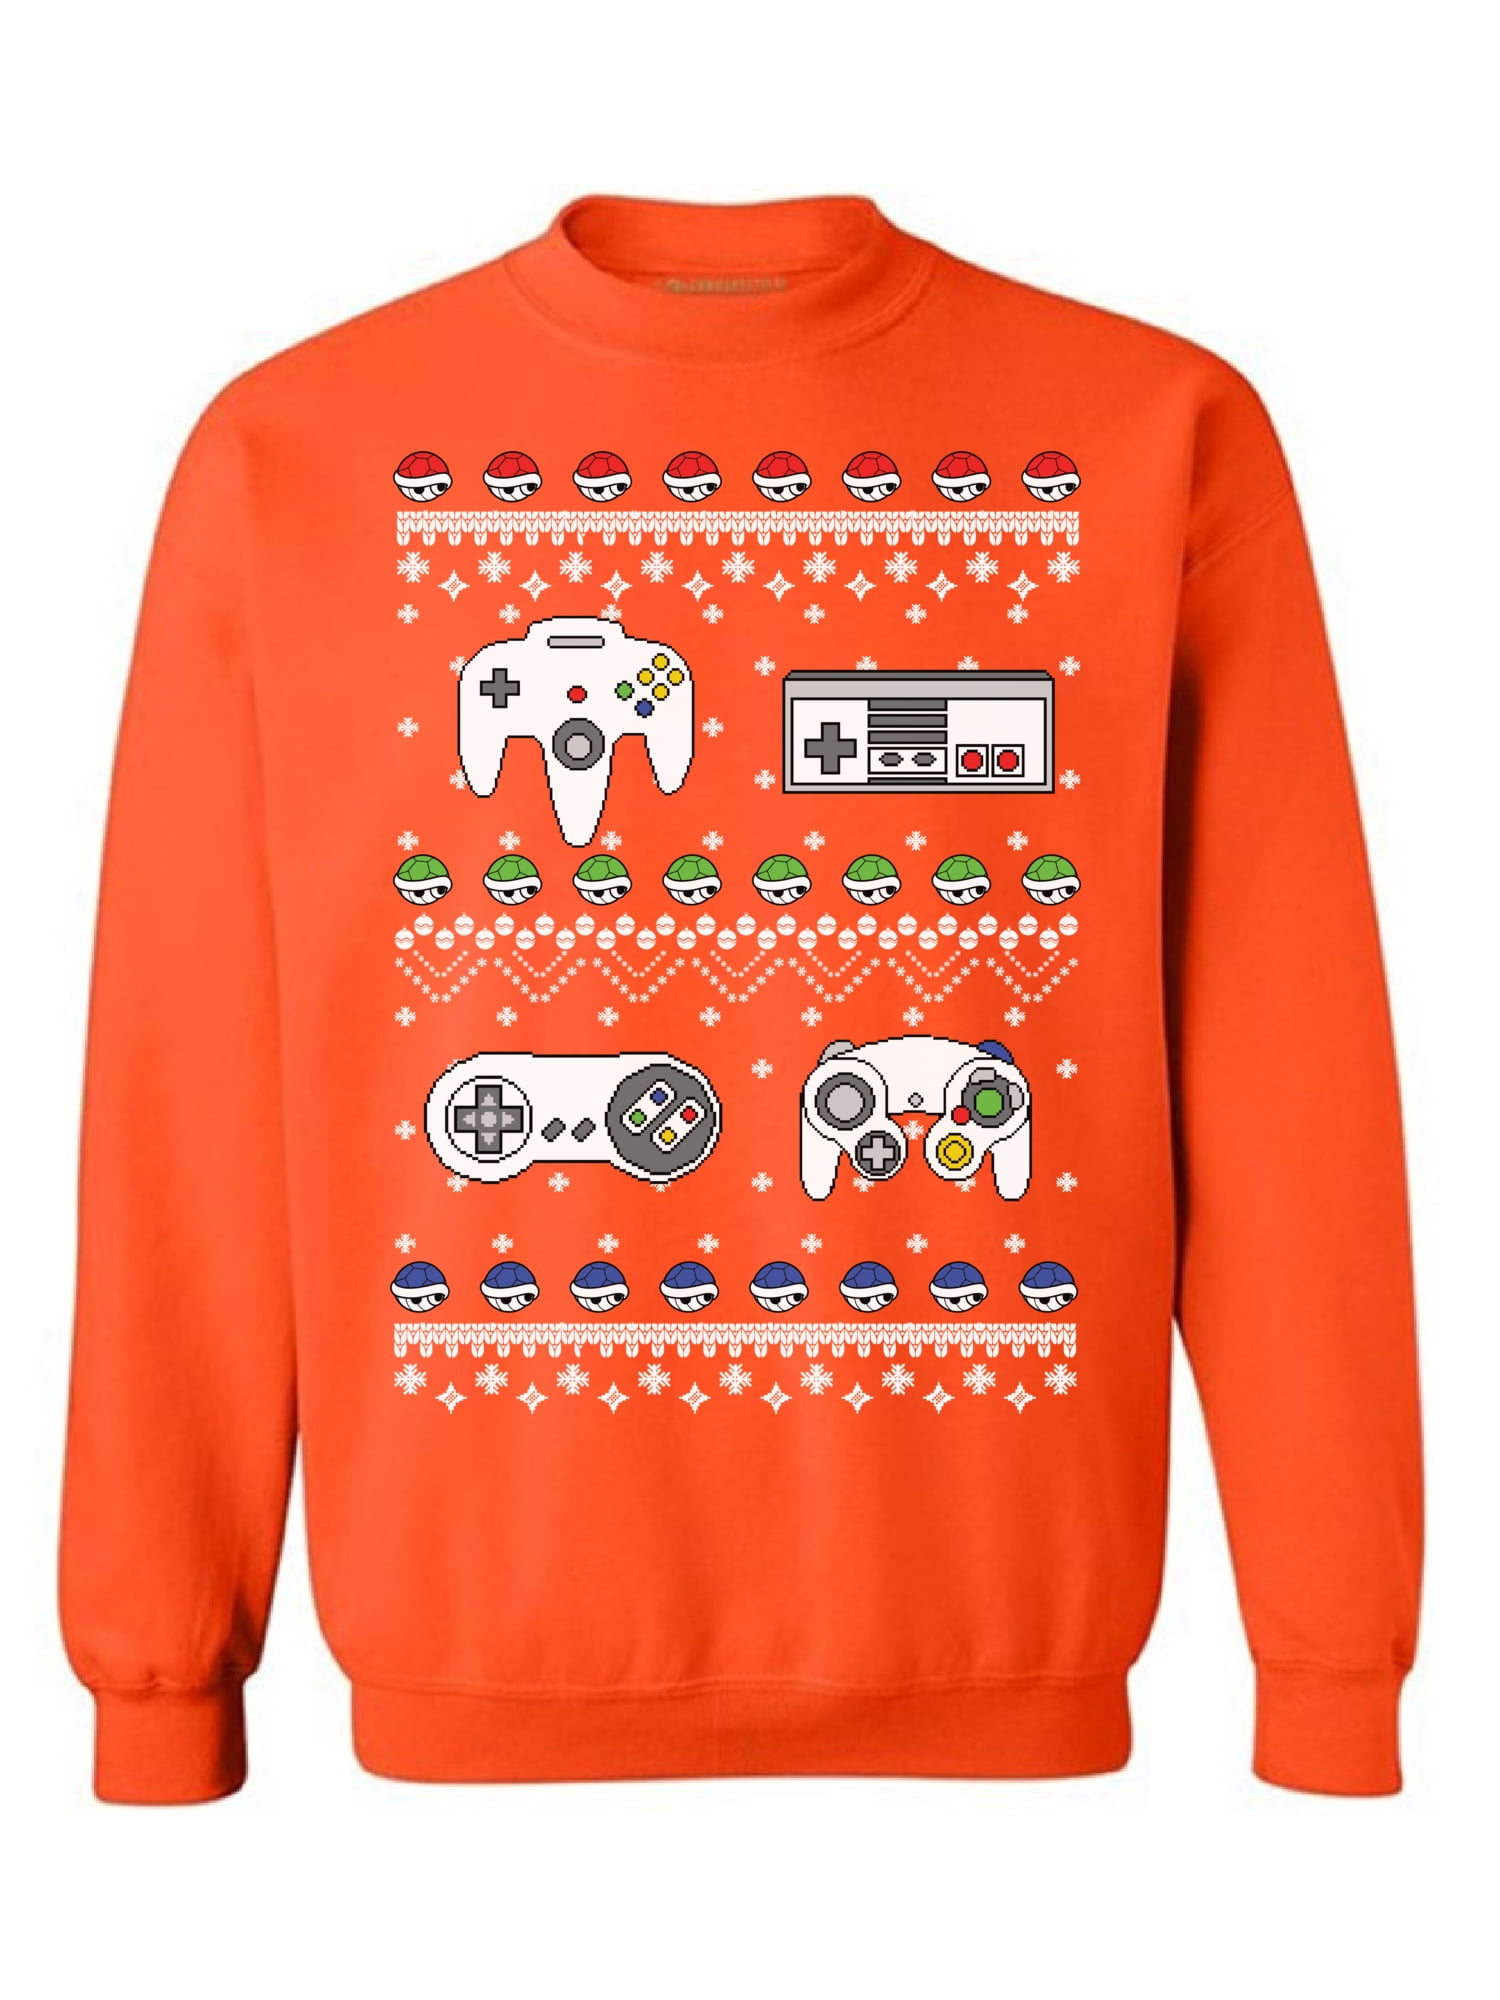 Meowy Christmas Sweatshirt Winter Sweatshirt Personalize Sweatshirt Gift for Her Holiday Sweatshirt Holiday Gift Customized Sweatshirt